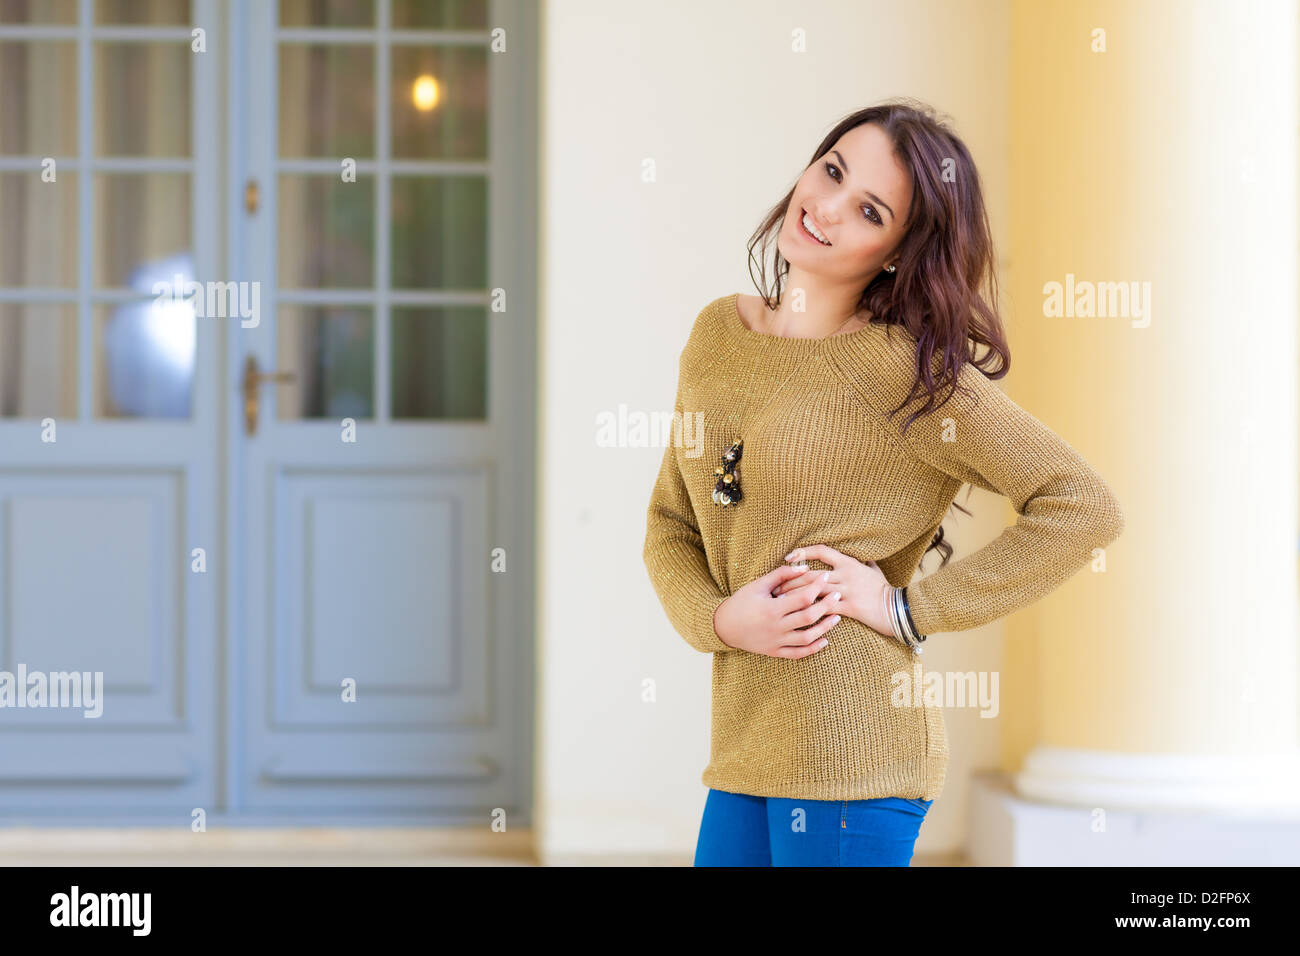 Cute woman in sweater posing Stock Photo